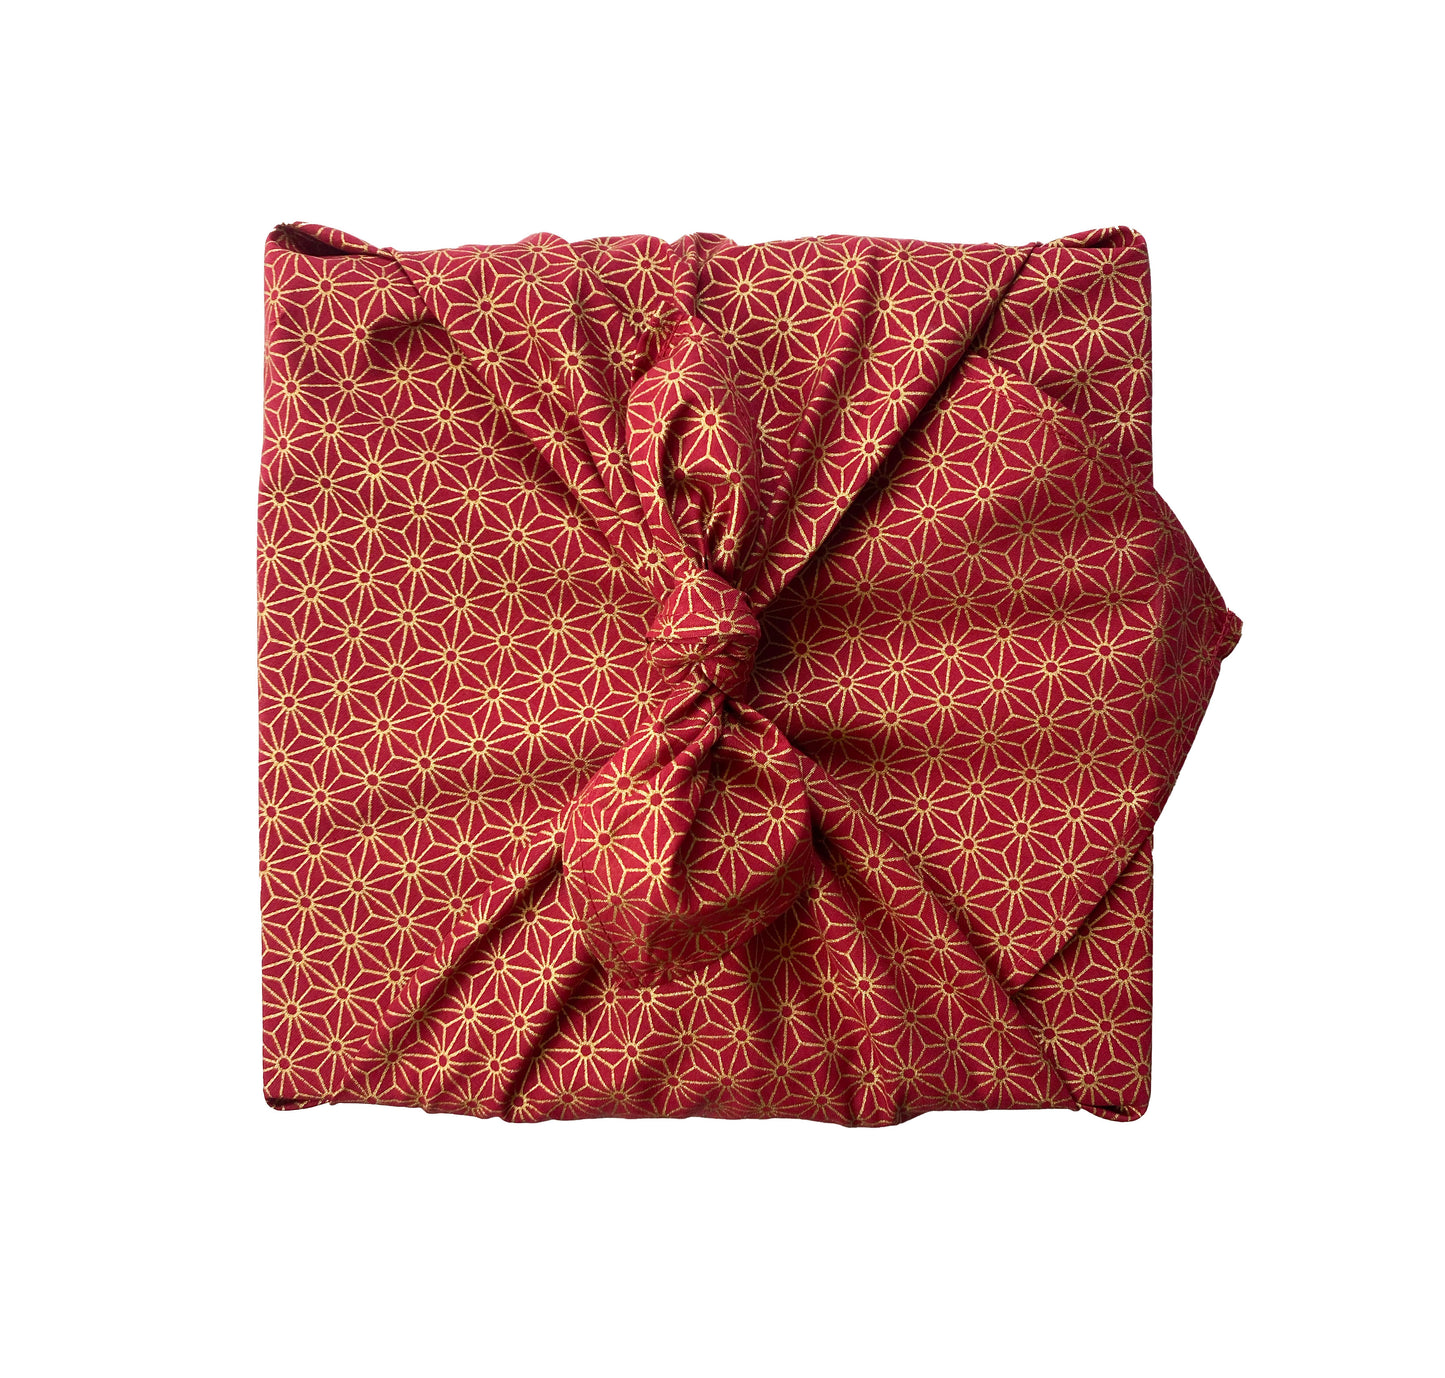 Christmas Classics - Jade and Ruby Furoshiki Fabric Gift Wrapping